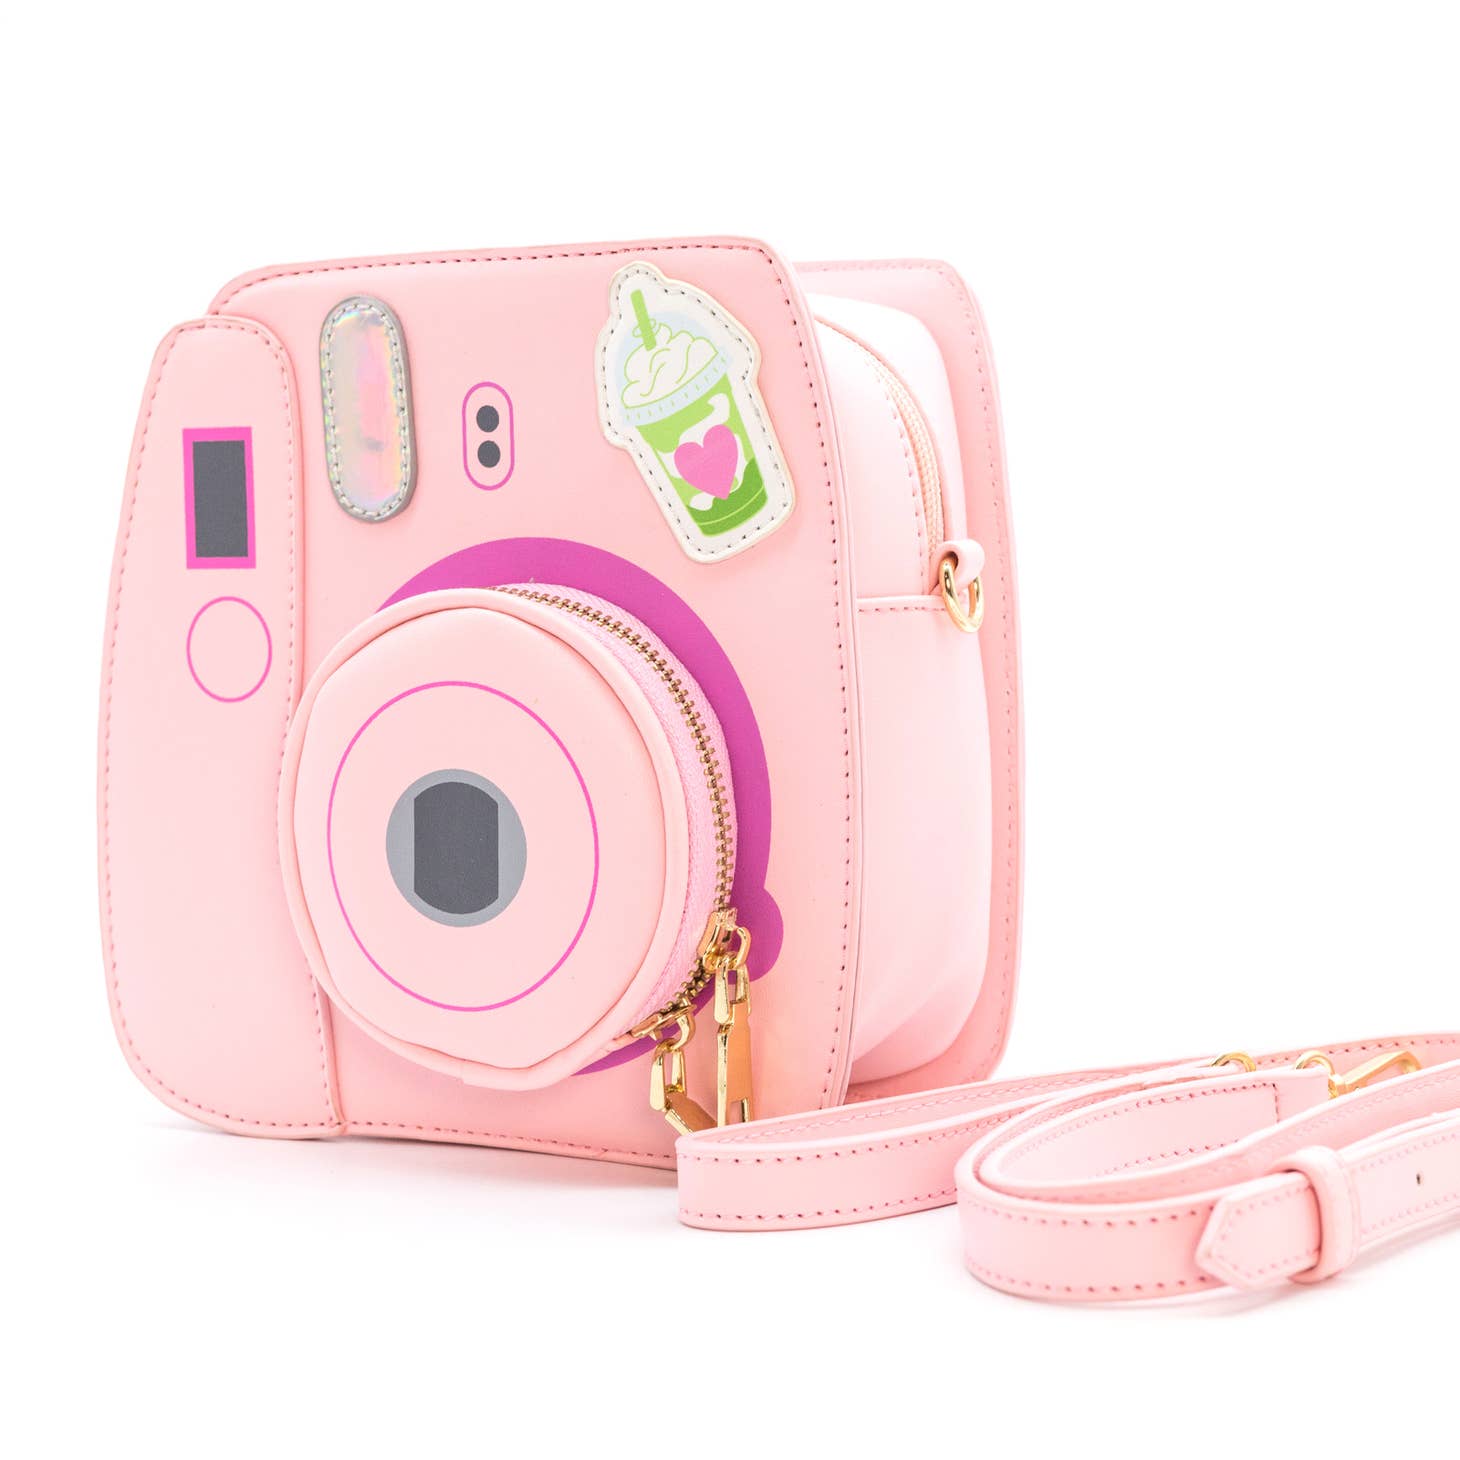 Bewaltz Oh Snap Instant Camera Handbags Kawaii Gifts